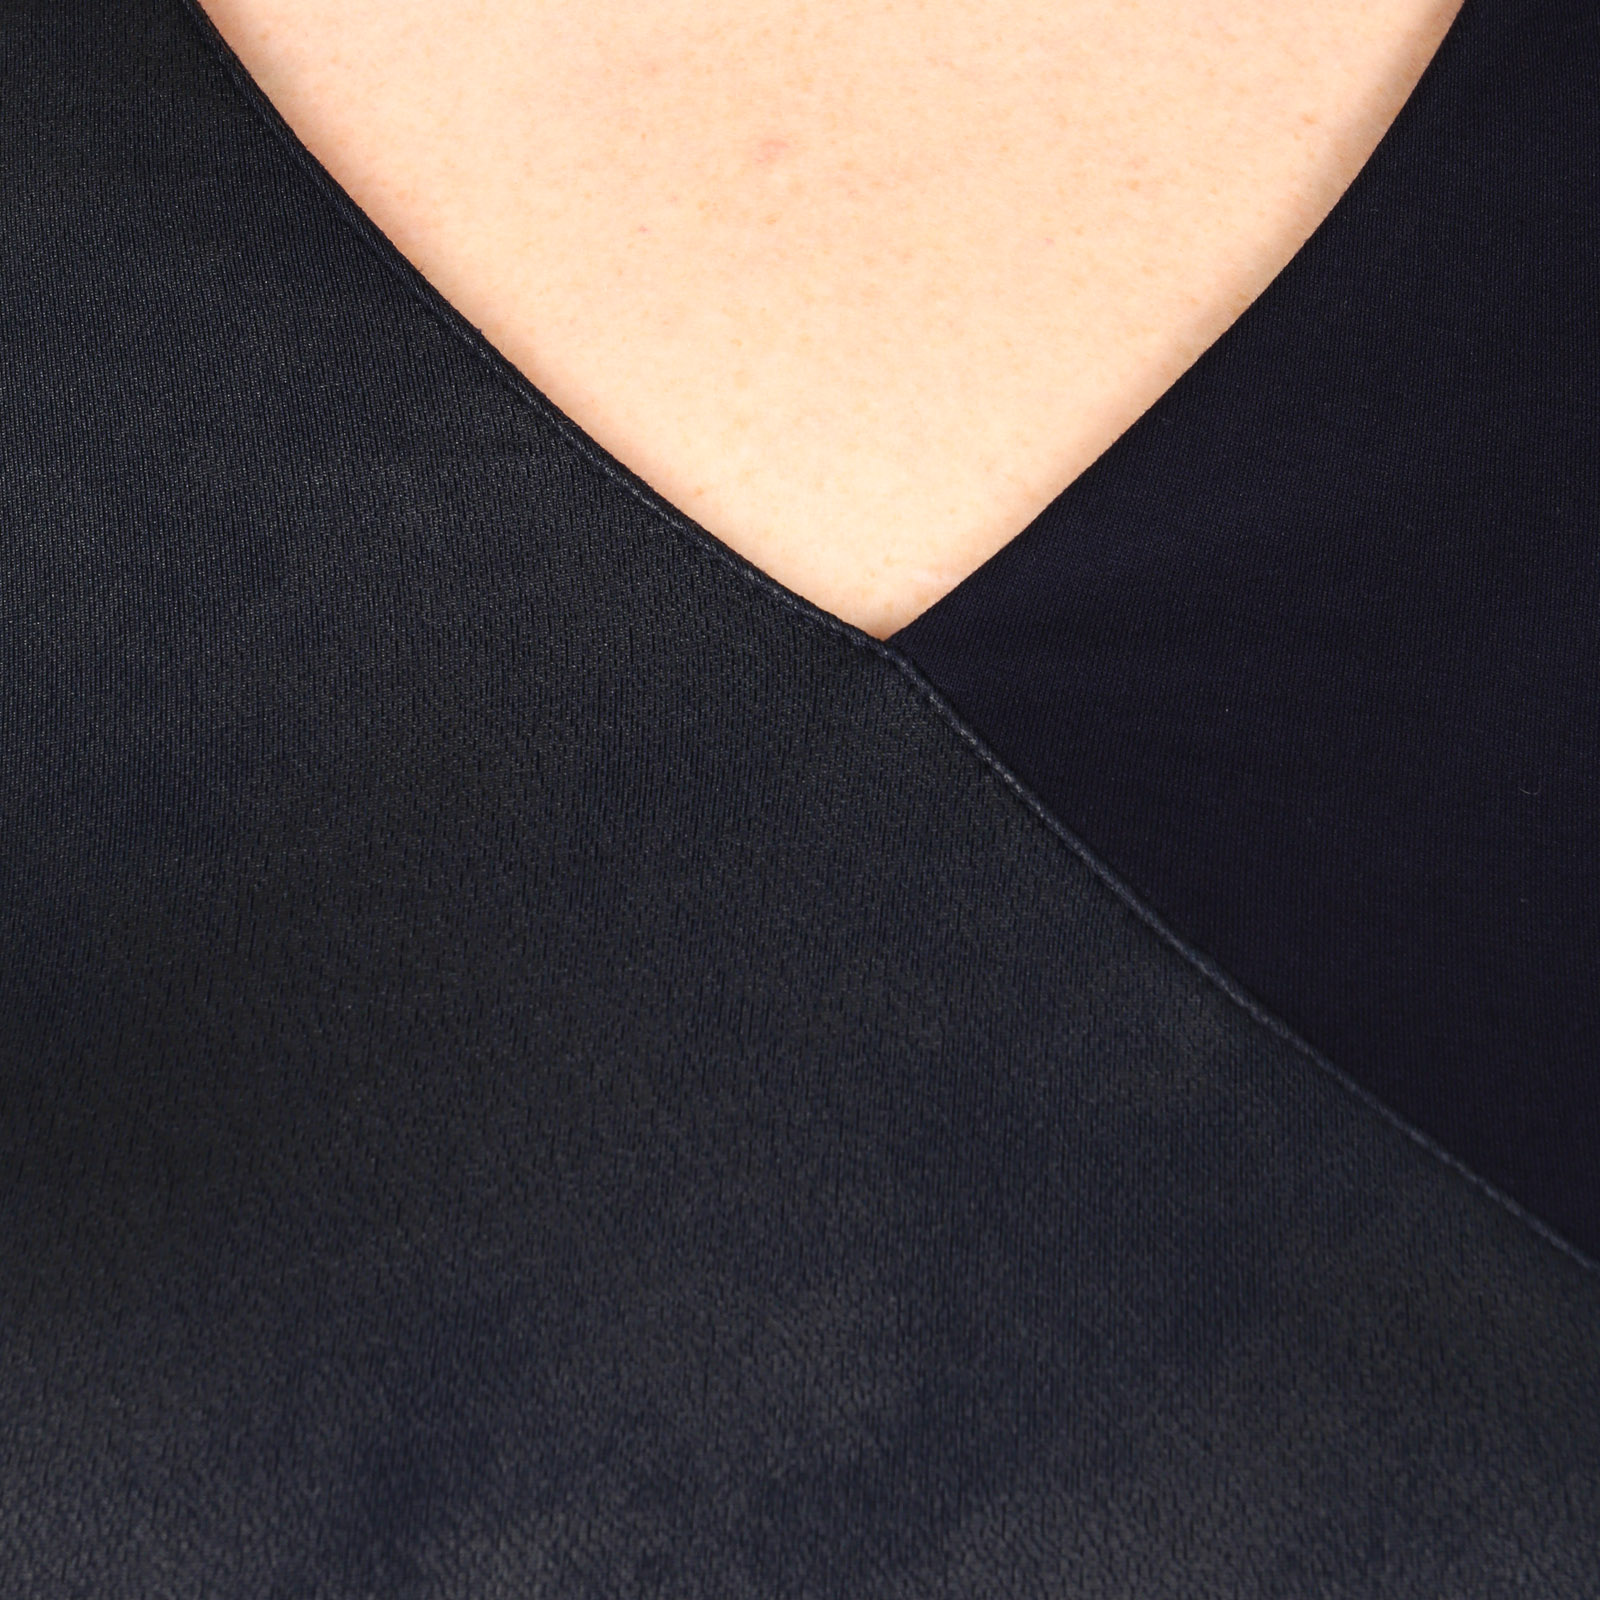 Платье с асимметричной вставкой из эко-кожи Lina, размер 52, цвет синий - фото 7